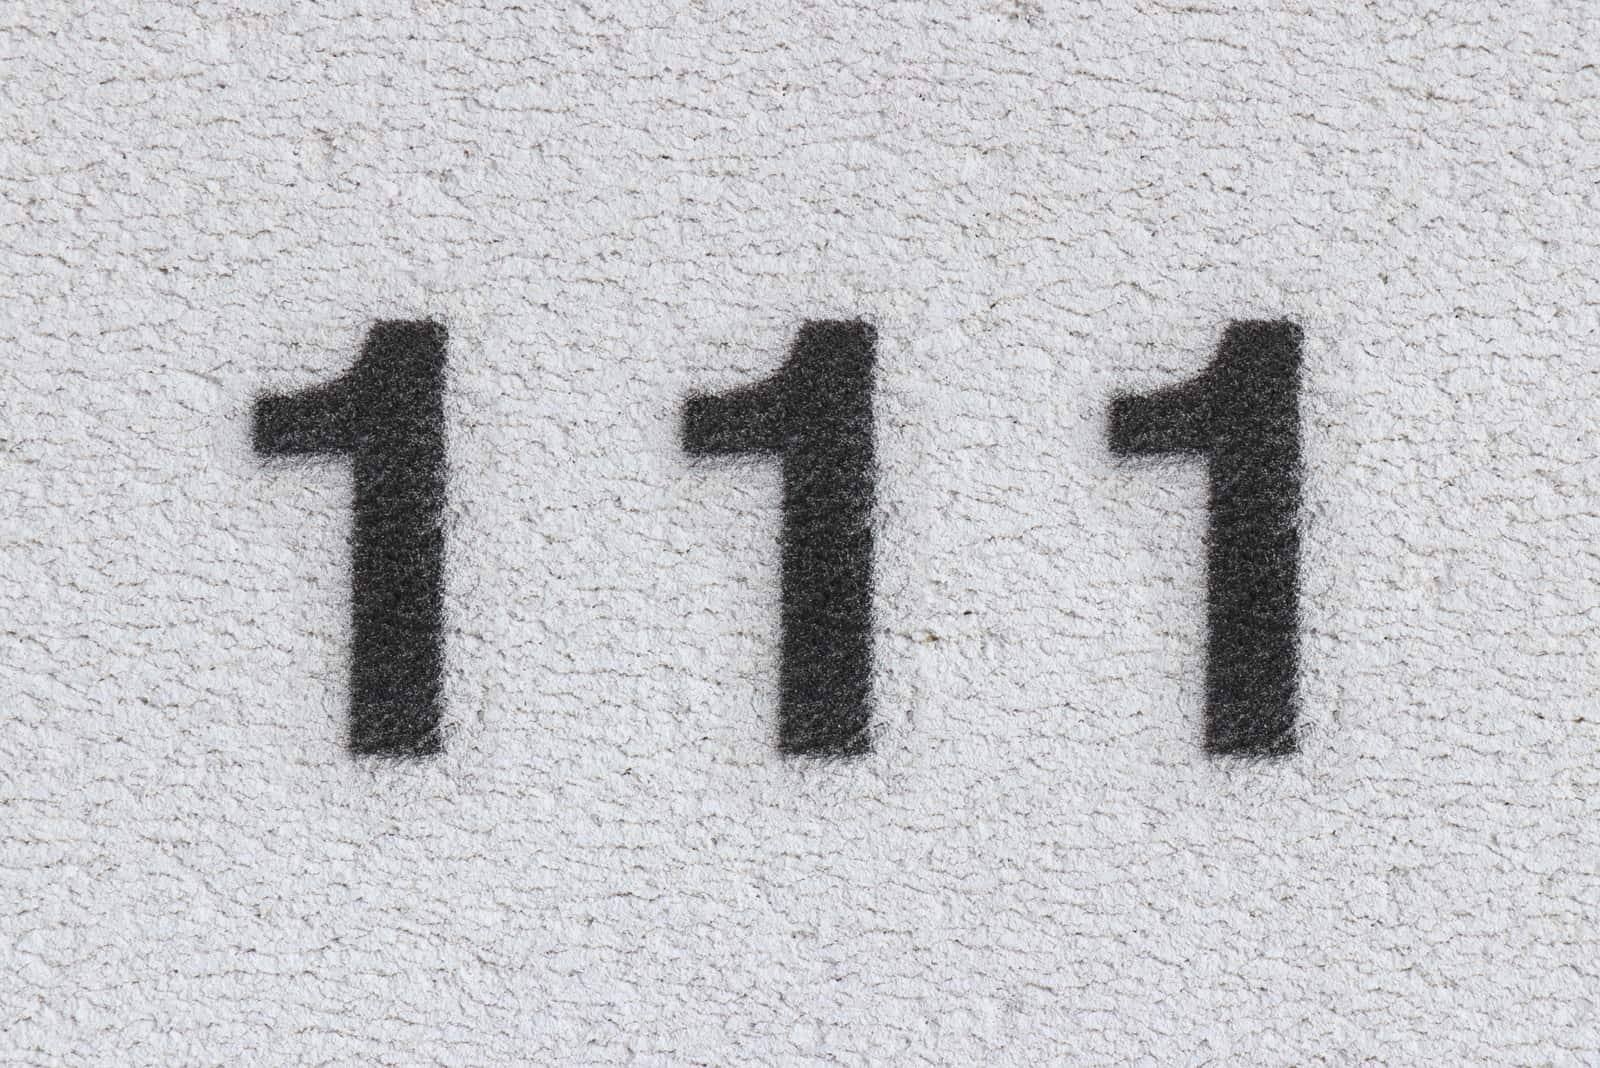 Nummer 111 auf der Fassade des Hauses gezeichnet